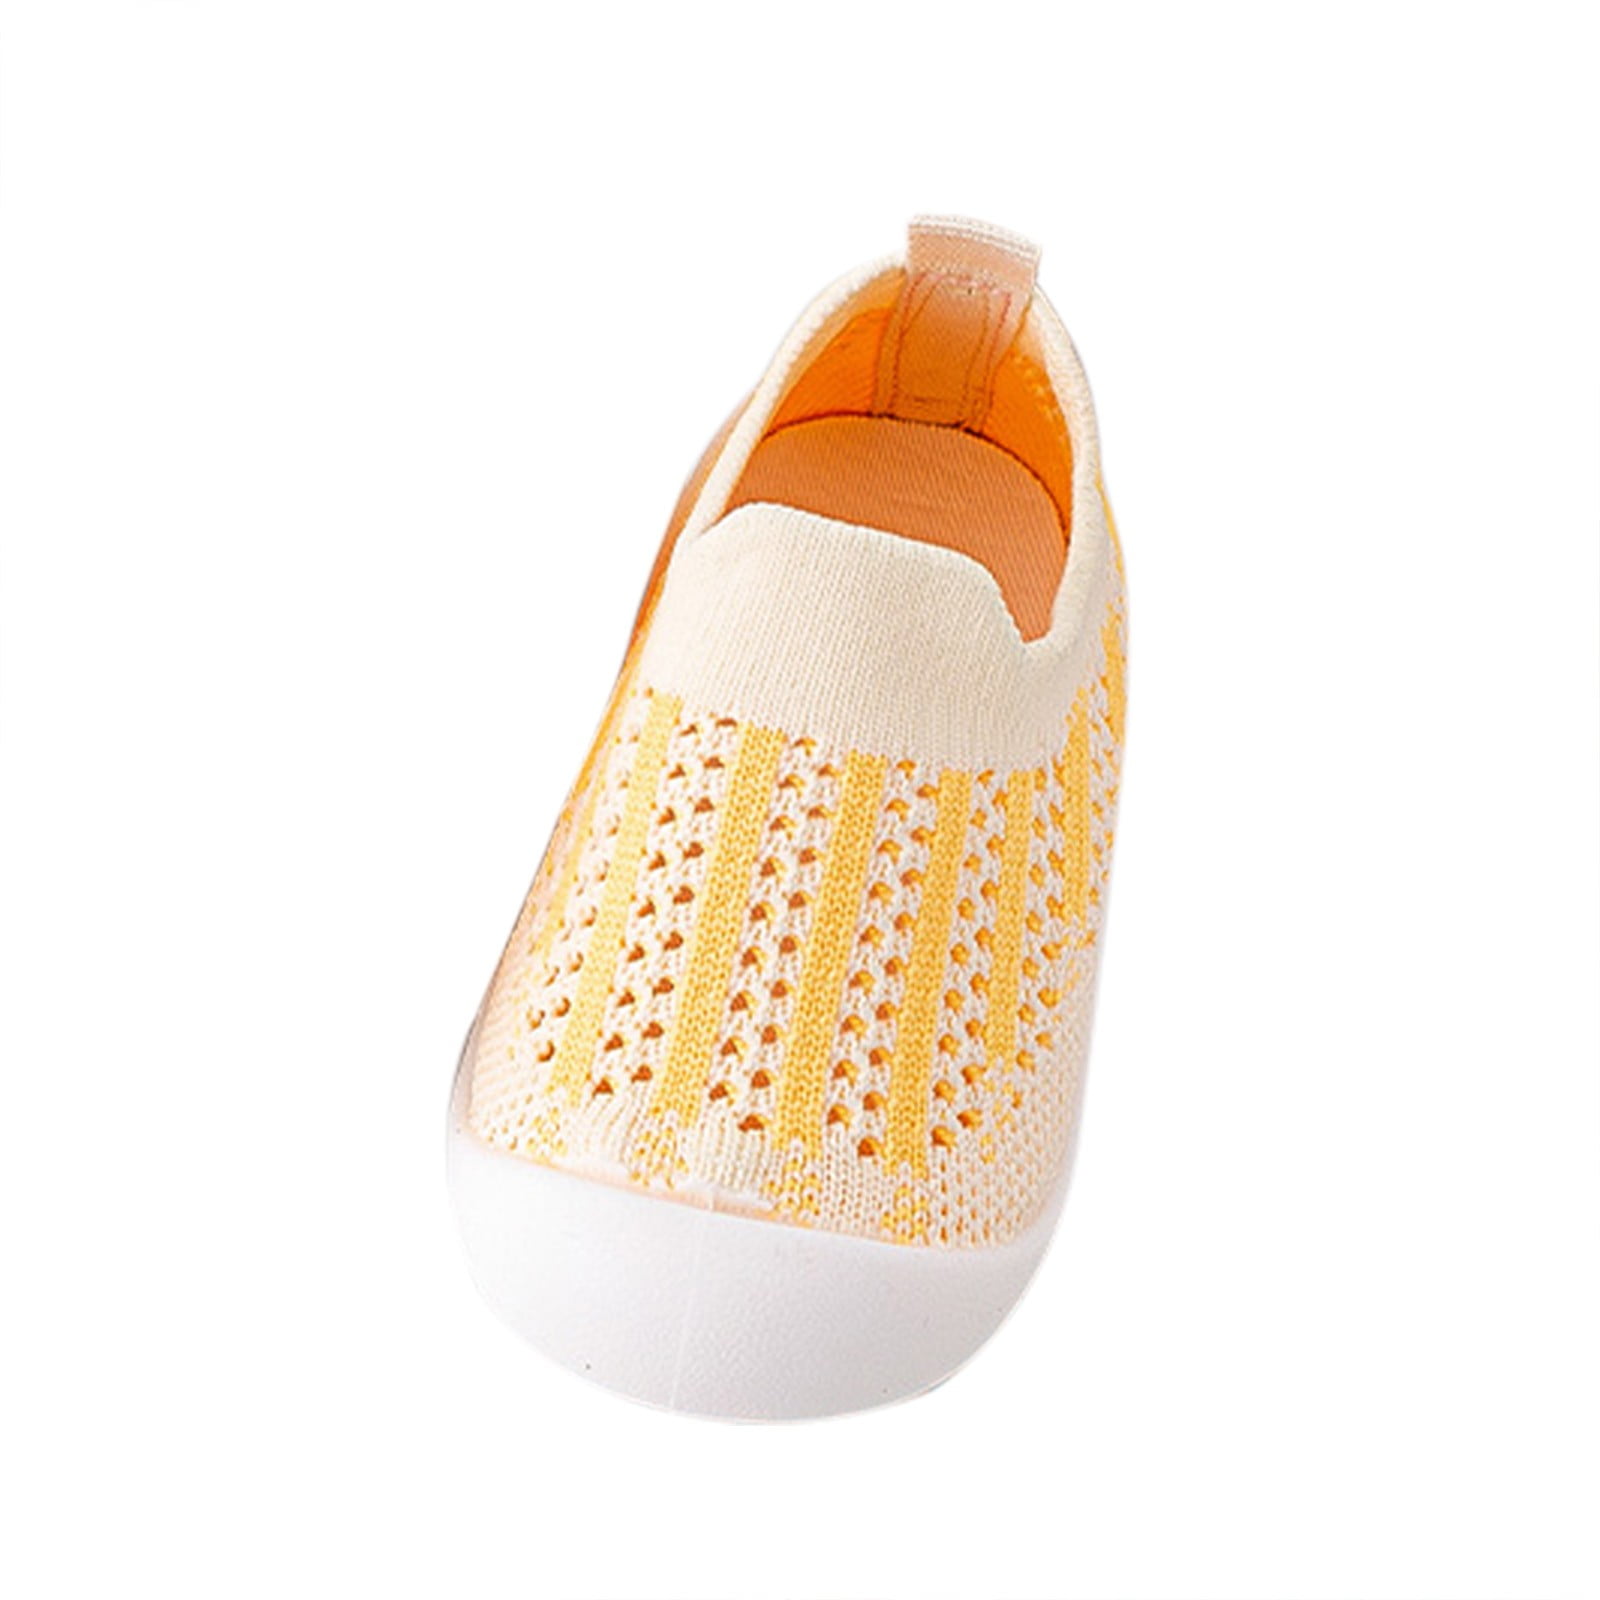 Hbdhejl Soft Shoes For Baby Infant Toddler Shoes Mesh Slip On Socks ...